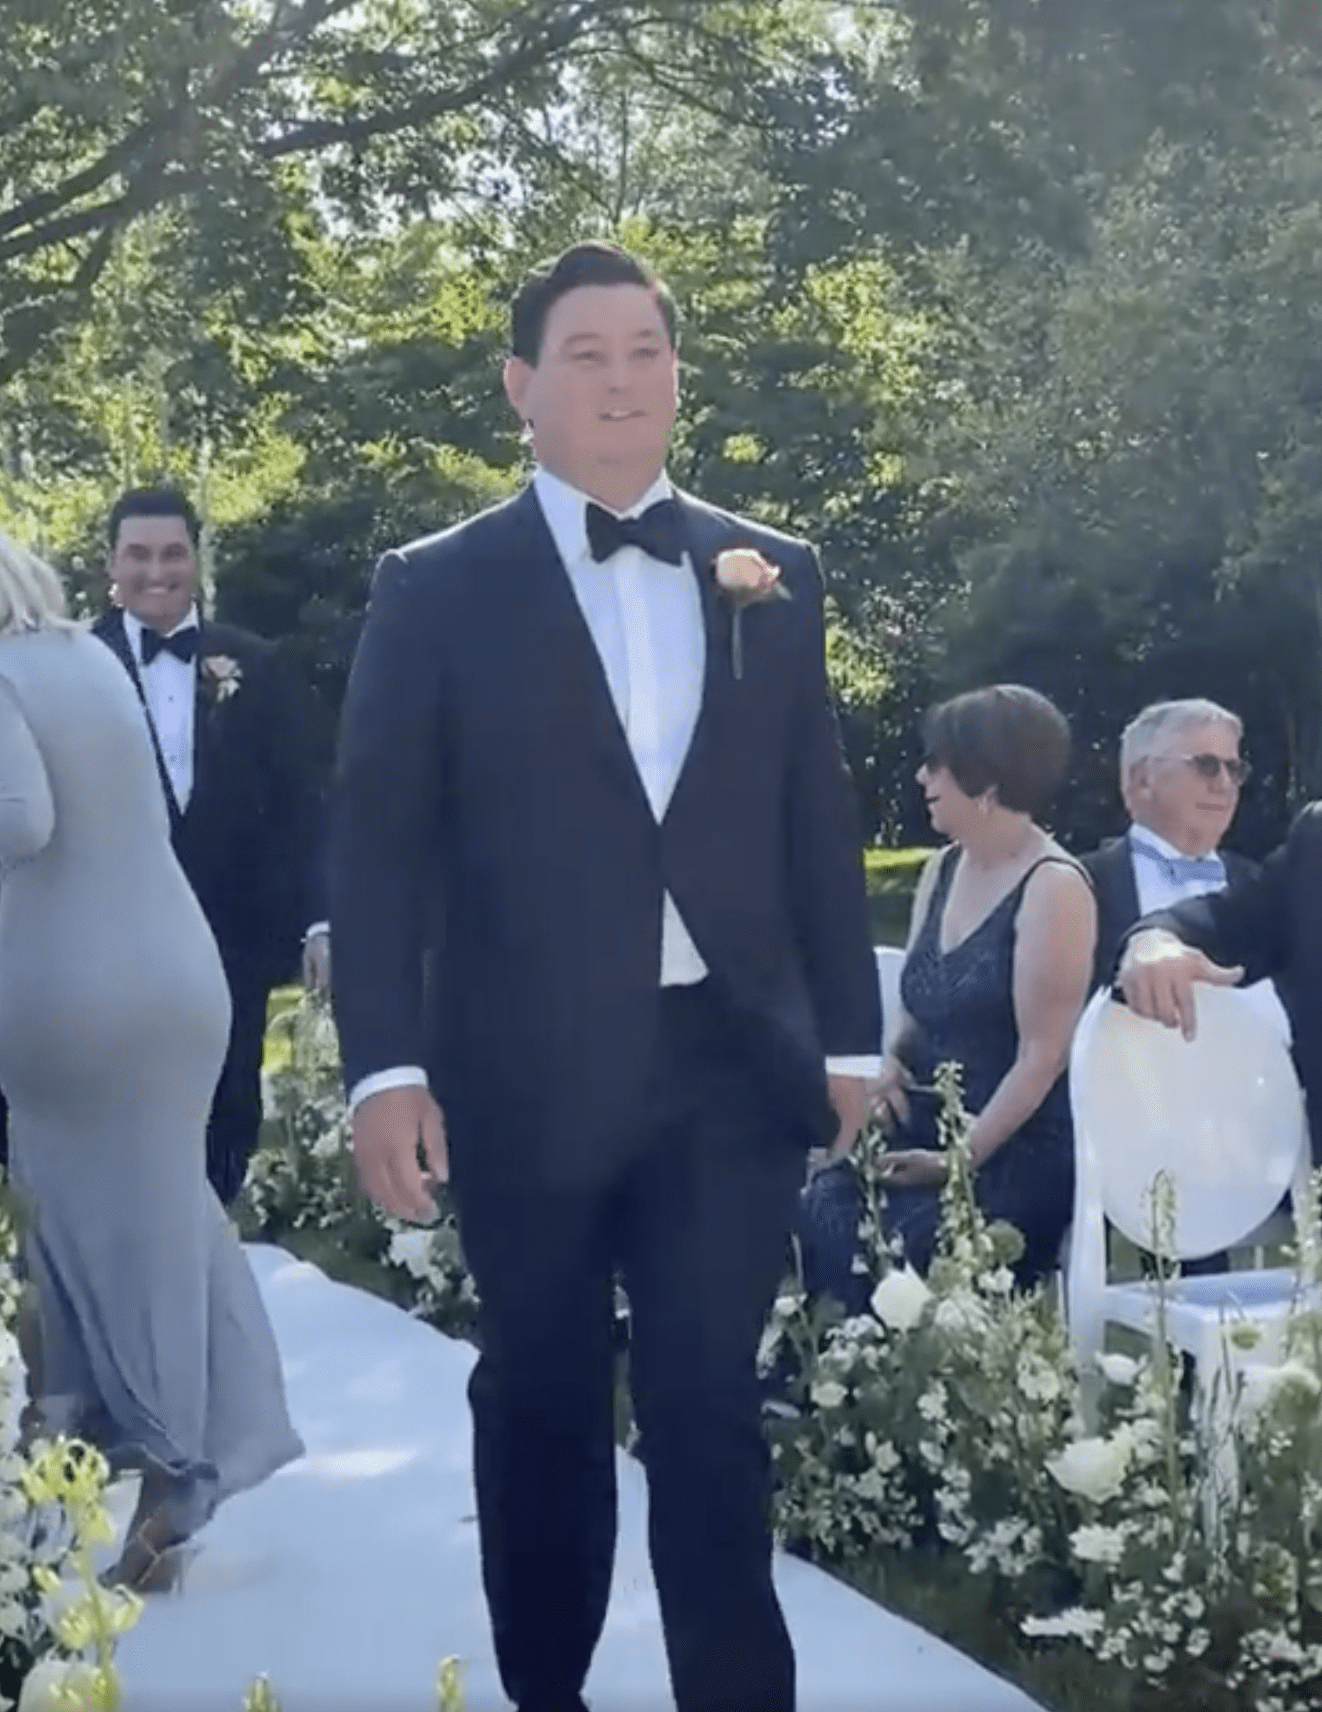 Der Bräutigam ist abgebildet, wie er den Gang hinuntergeht, während einer seiner Trauzeugen im Hintergrund lacht. | Quelle: reddit.com/r/weddingshaming